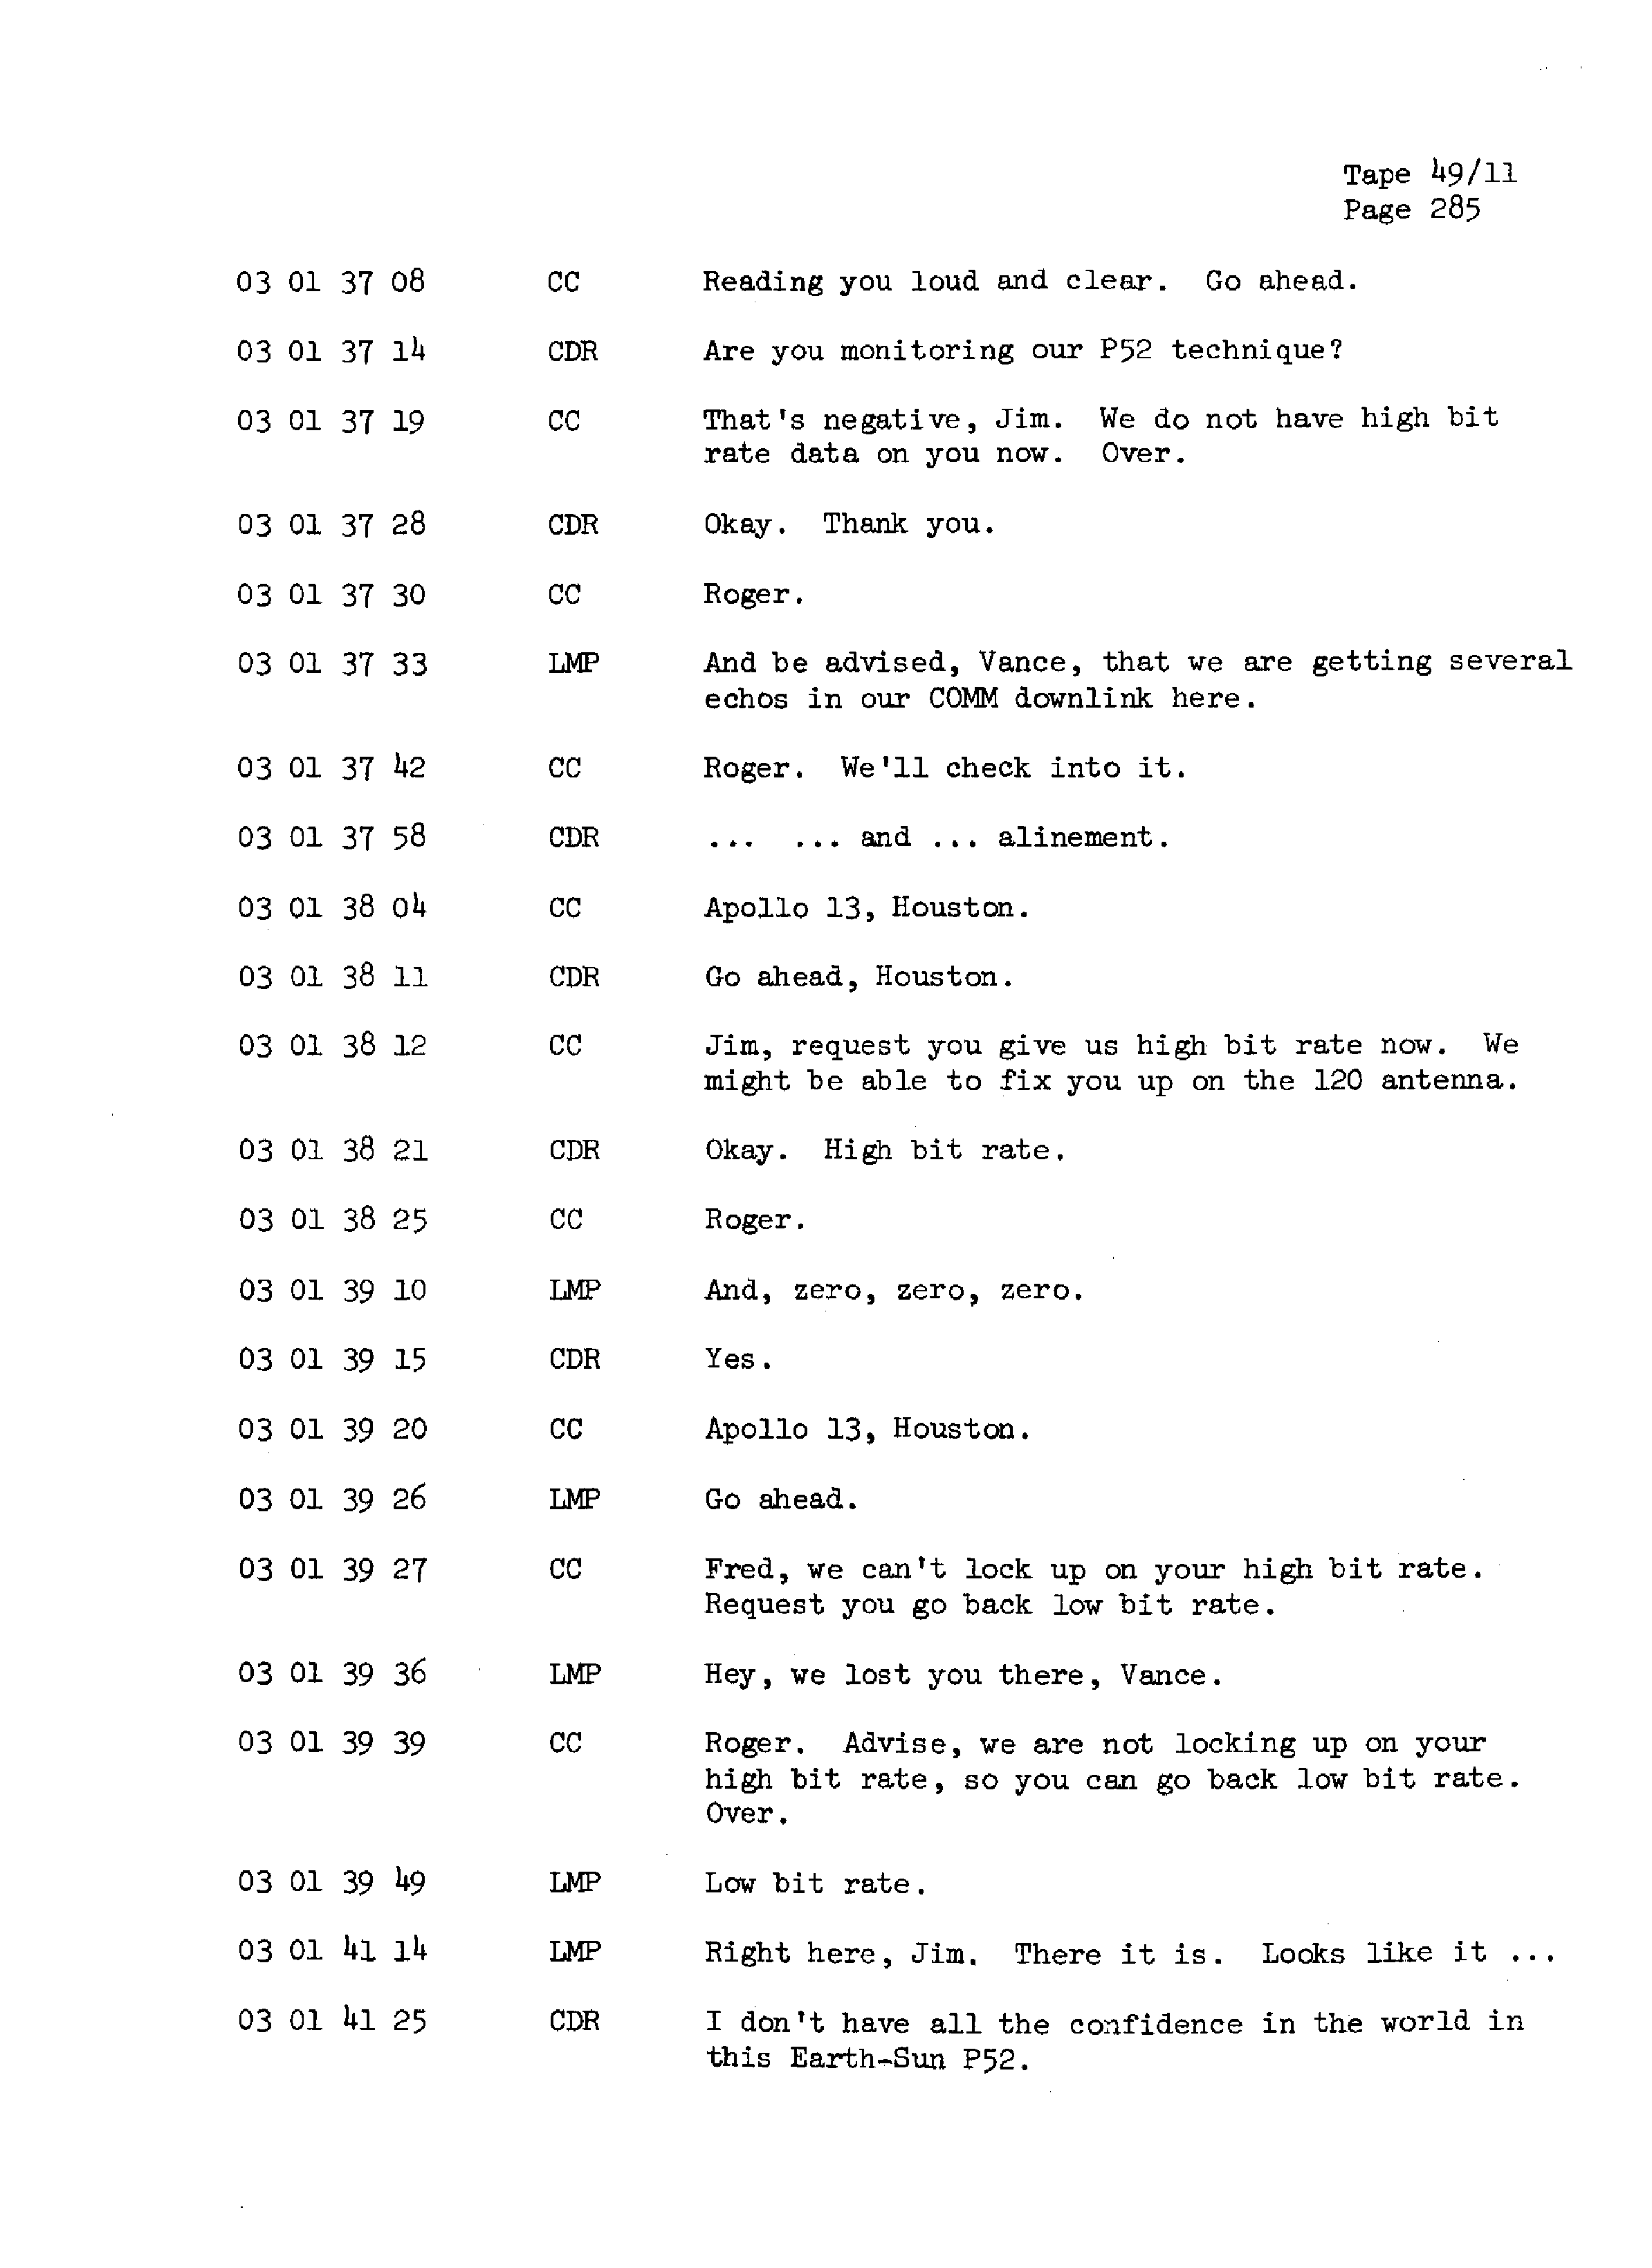 Page 292 of Apollo 13’s original transcript